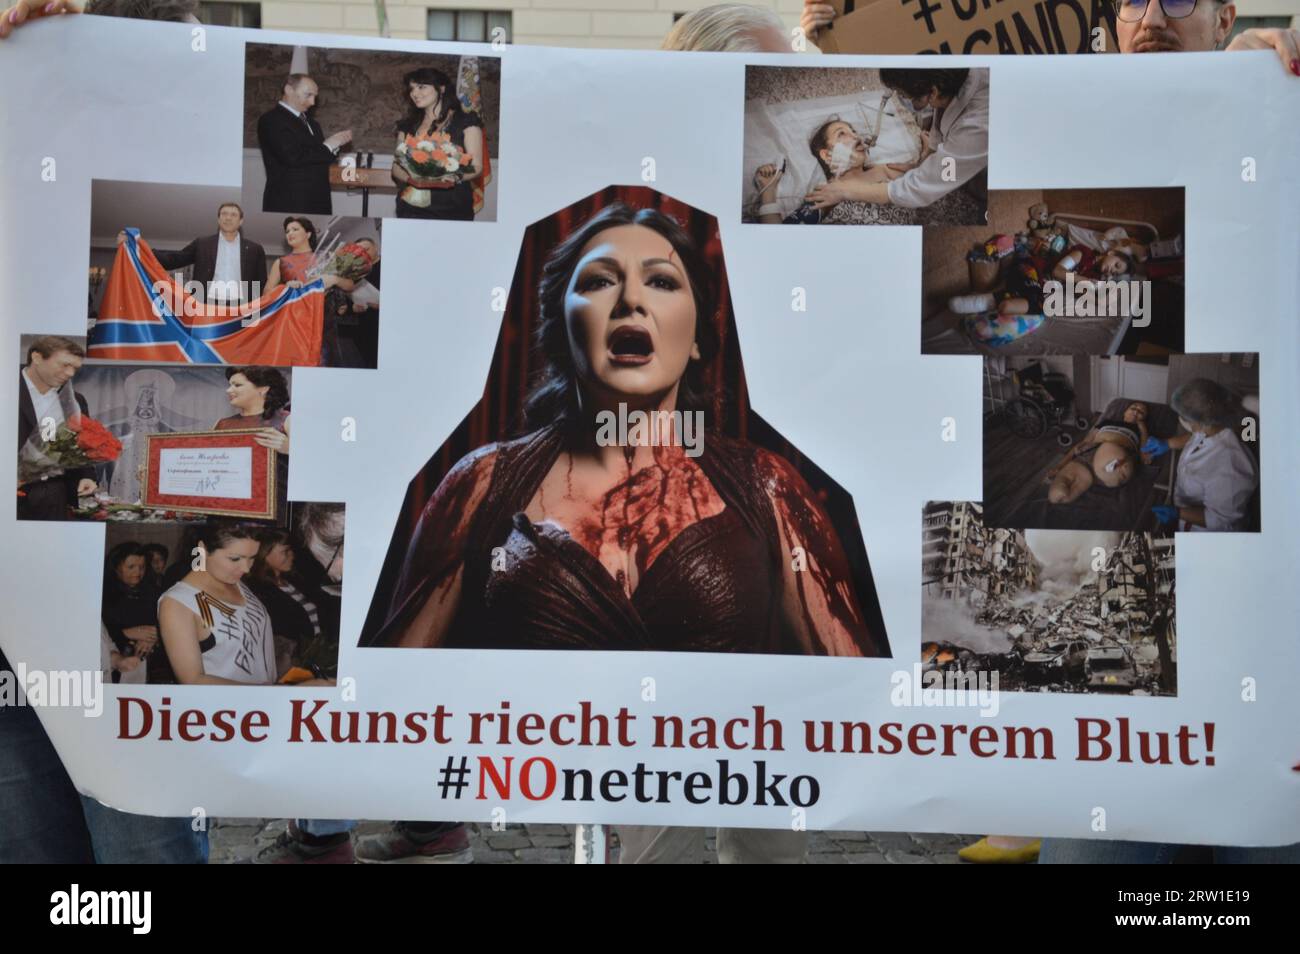 Berlín, Alemania - 15 de septiembre de 2023 - Anna Netrebko en Berlín - Manifestación frente a la Ópera Estatal - Netbreko es criticada por su supuesta cercanía a Putin. (Foto de Markku Rainer Peltonen) Foto de stock